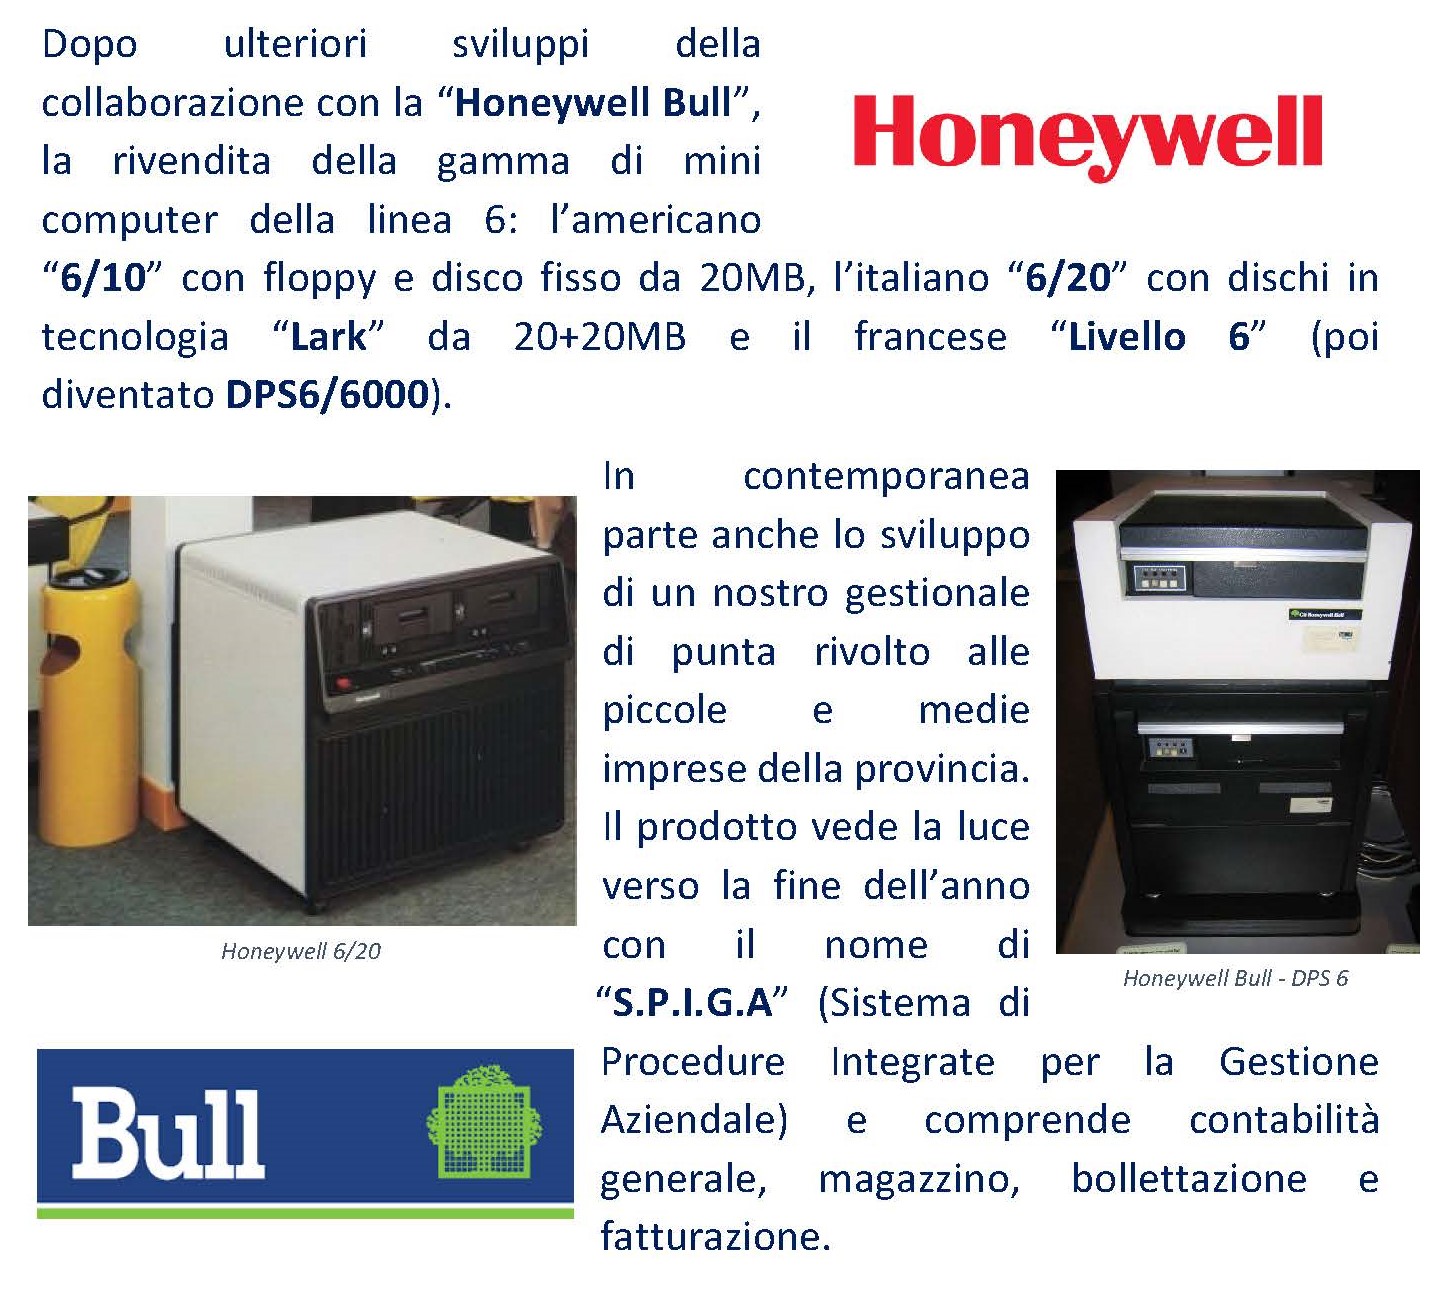 Dopo ulteriori sviluppi della collaborazione con la “Honeywell Bull”, la rivendita della gamma di mini computer della linea 6: l’americano “6/10” con floppy e disco fisso da 20MB, l’italiano “6/20” con dischi in tecnologia “Lark” da 20+20MB e il francese “Livello 6” (poi diventato DPS6/6000). In contemporanea parte anche lo sviluppo di un nostro gestionale di punta rivolto alle piccole e medie imprese della provincia. Il prodotto vede la luce verso la fine dell’anno con il nome di “S.P.I.G.A” (Sistema di Procedure Integrate per la Gestione Aziendale) e comprende contabilità generale, magazzino, bollettazione e fatturazione. 